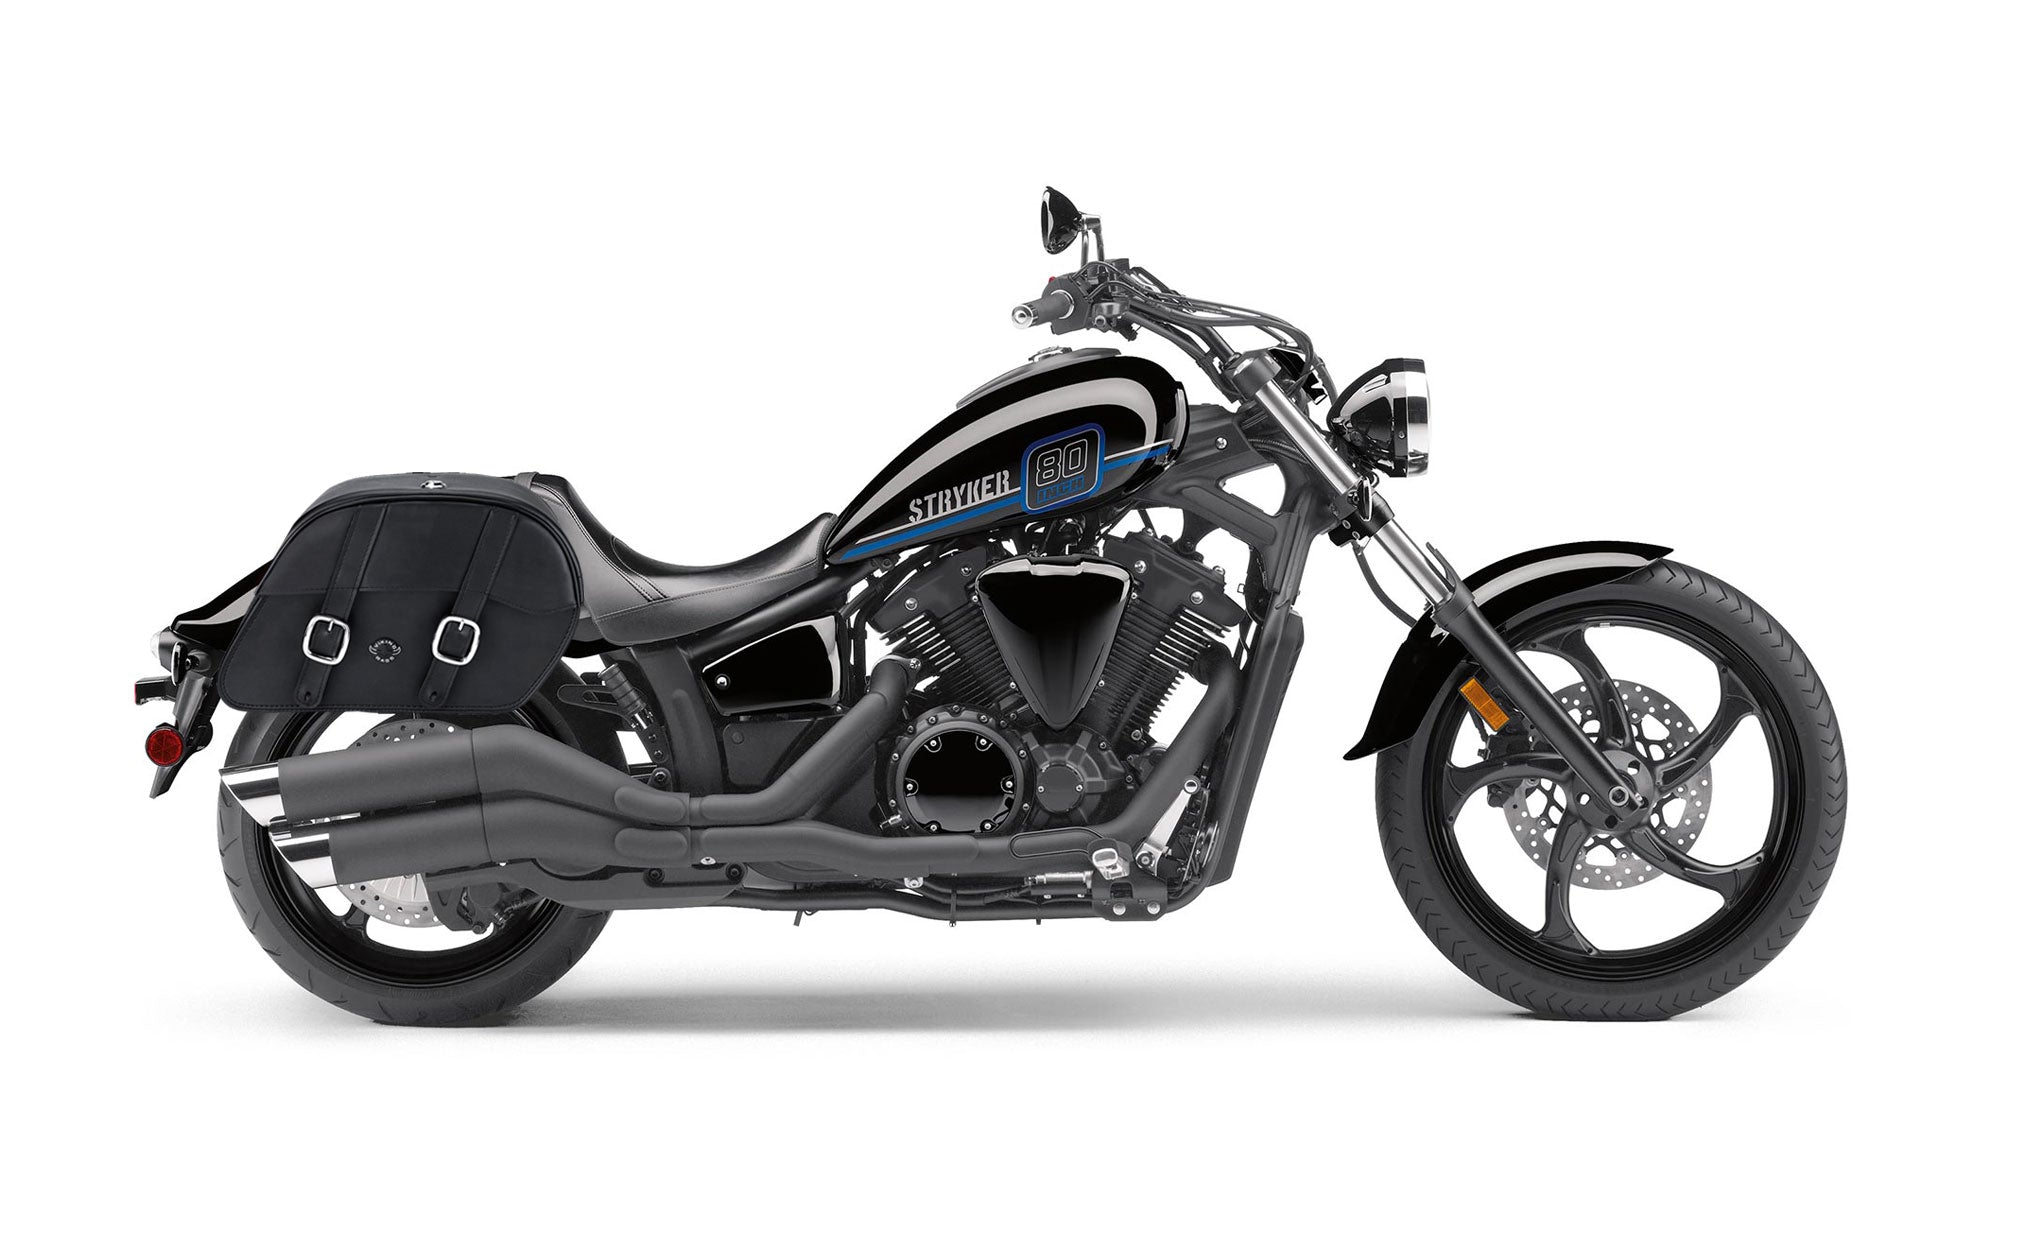 Viking Skarner Large Yamaha Stryker Leather Motorcycle Saddlebags on Bike Photo @expand